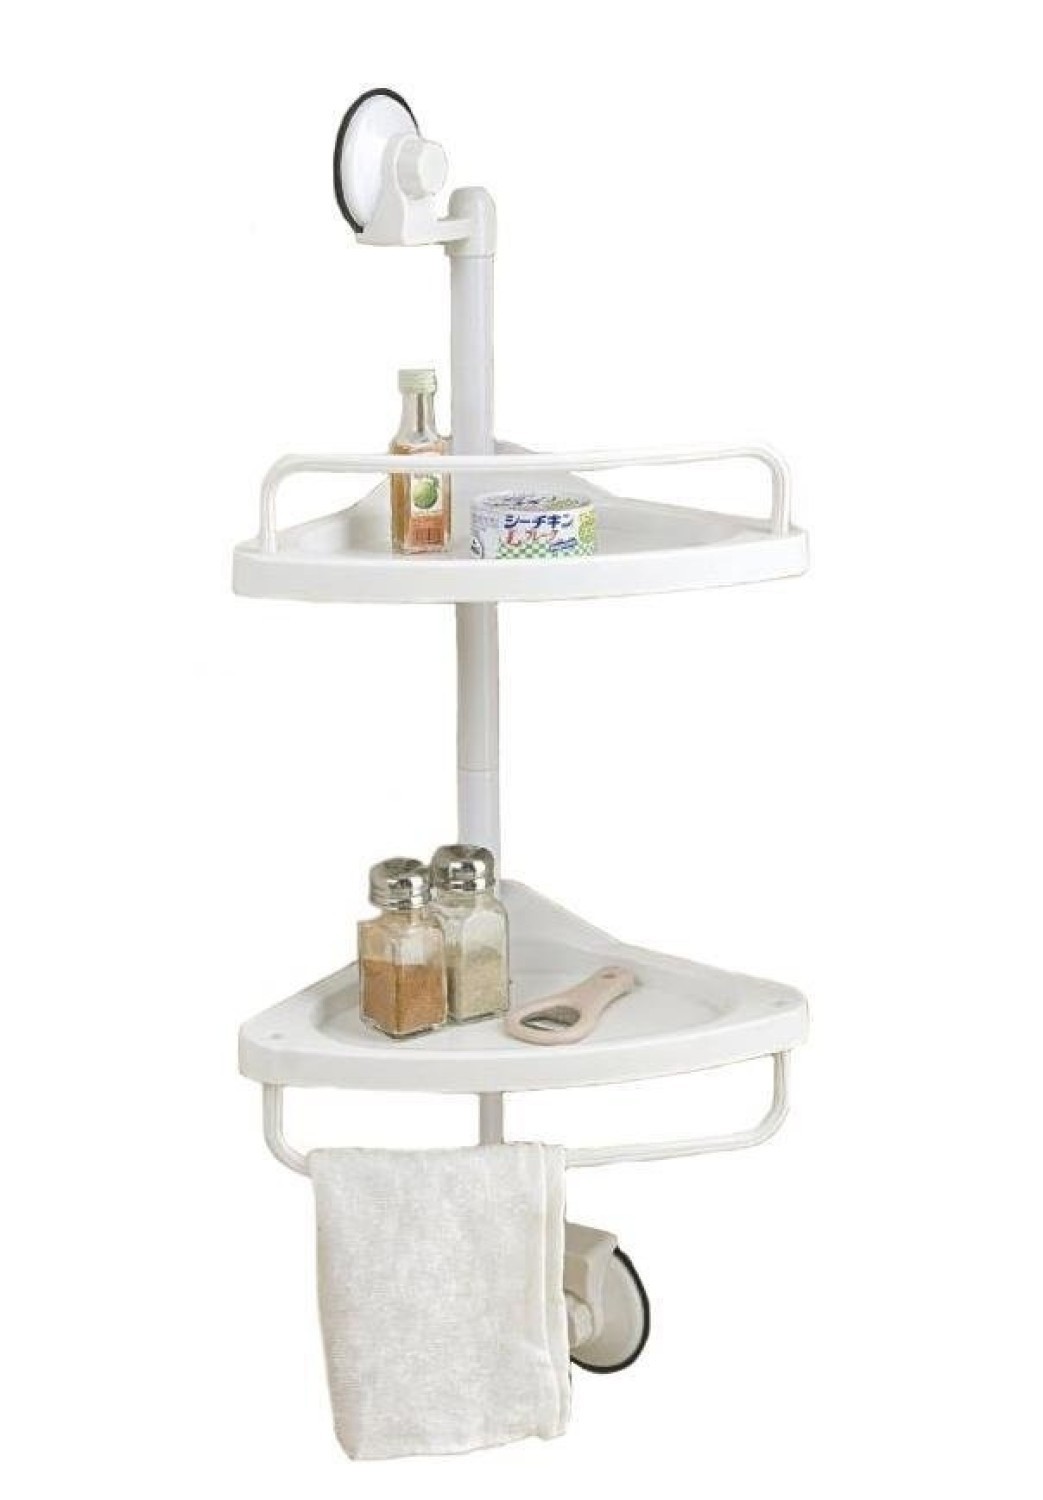 Vieworld 2 Tier Adjustable Plastic Shower Caddy/Kitchen Corner Shelf w/Towel Bar, White